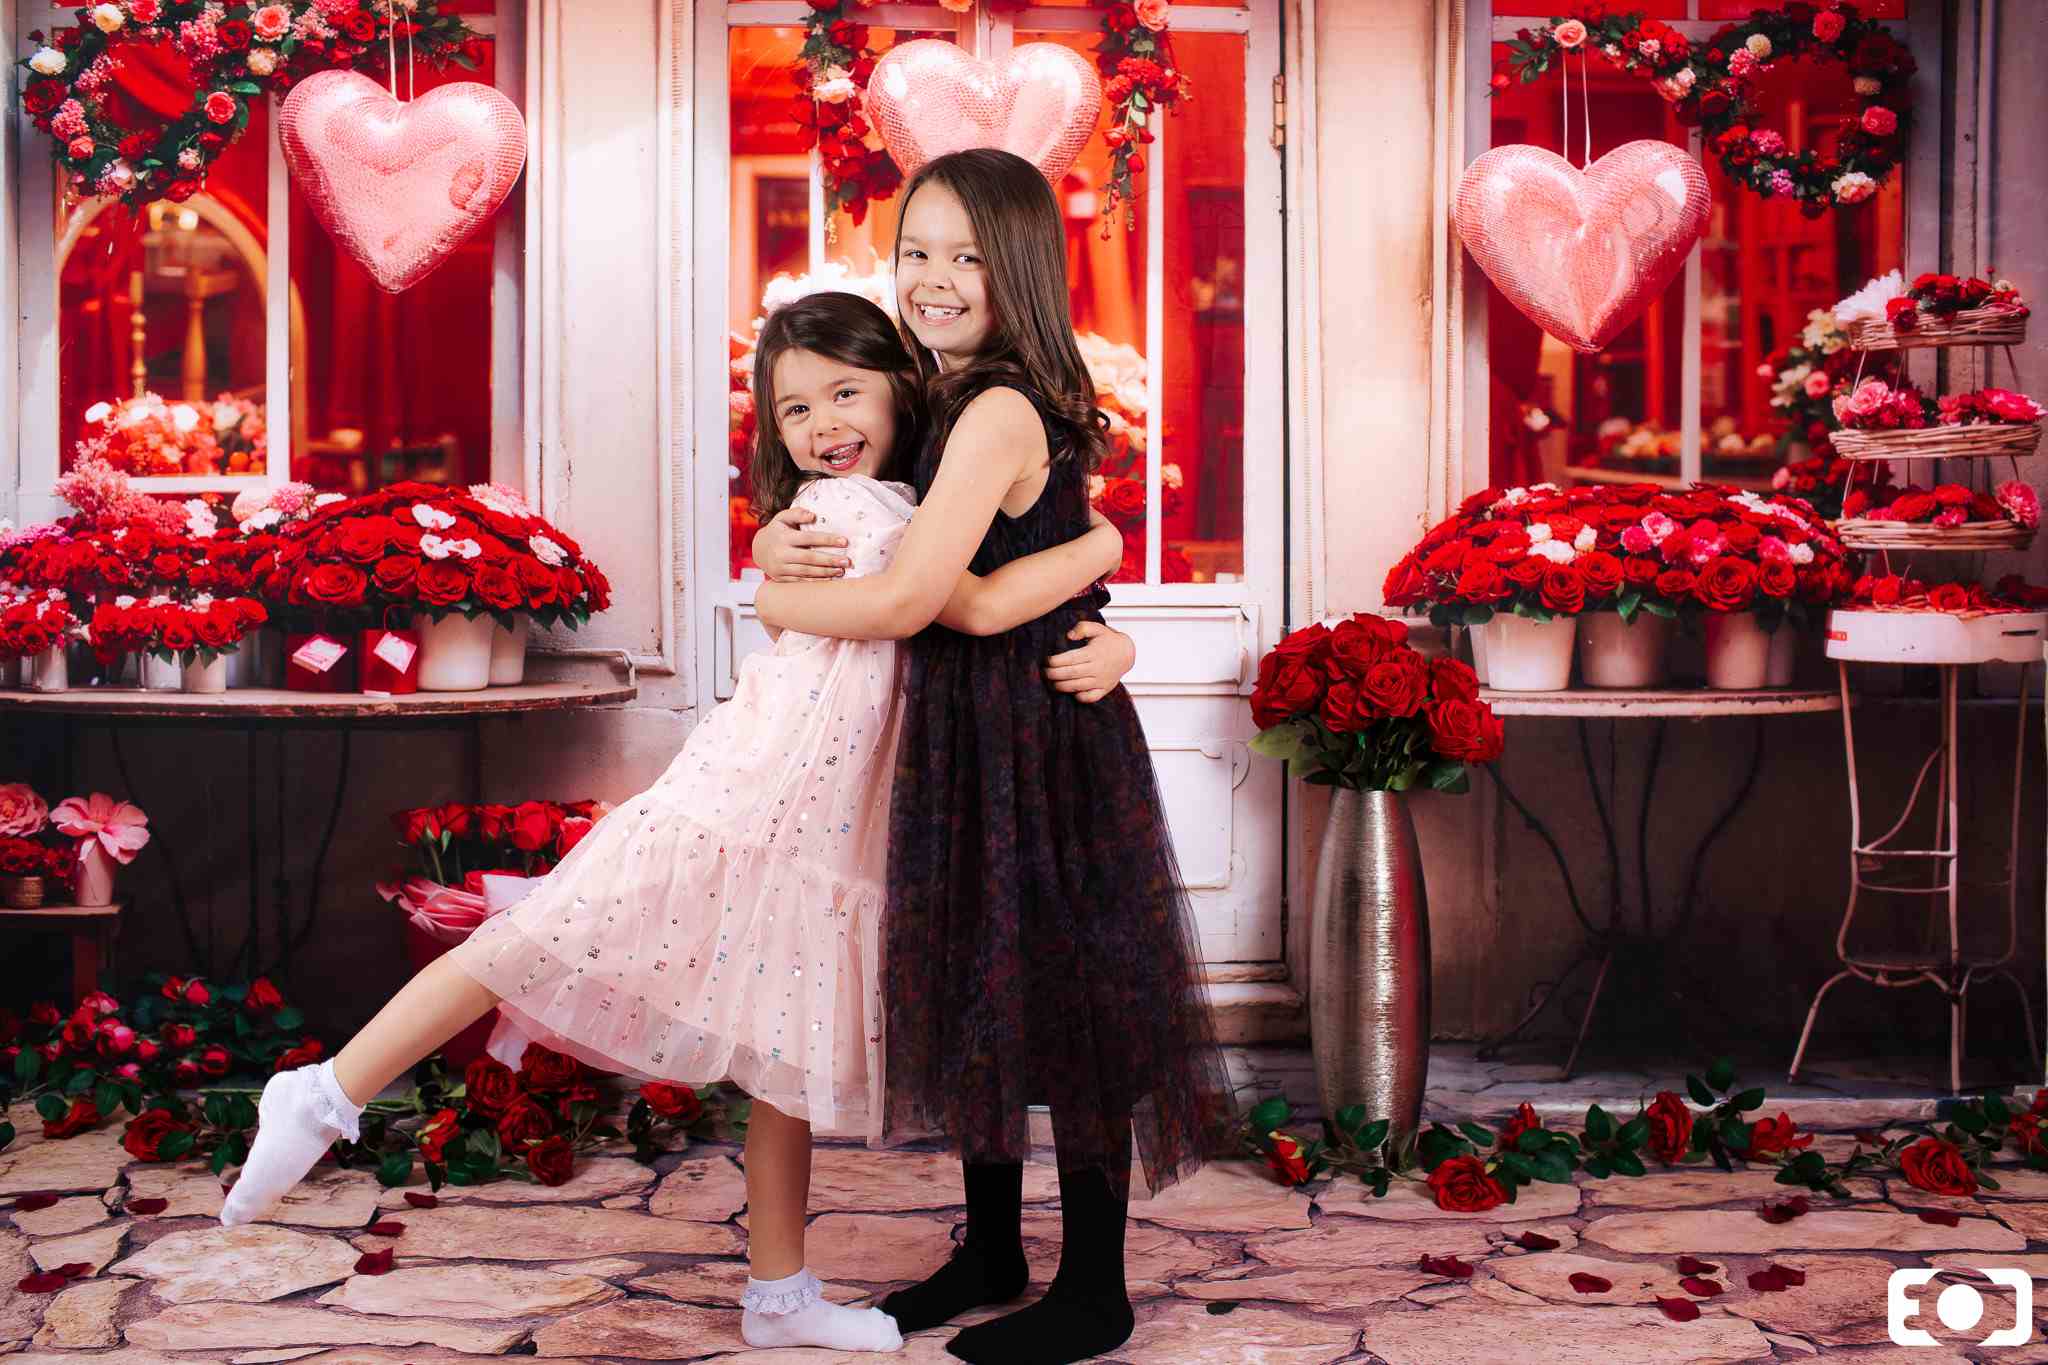 Kate Valentinstag Rote Rose Blumenladen Hintergrund von Chain Photography